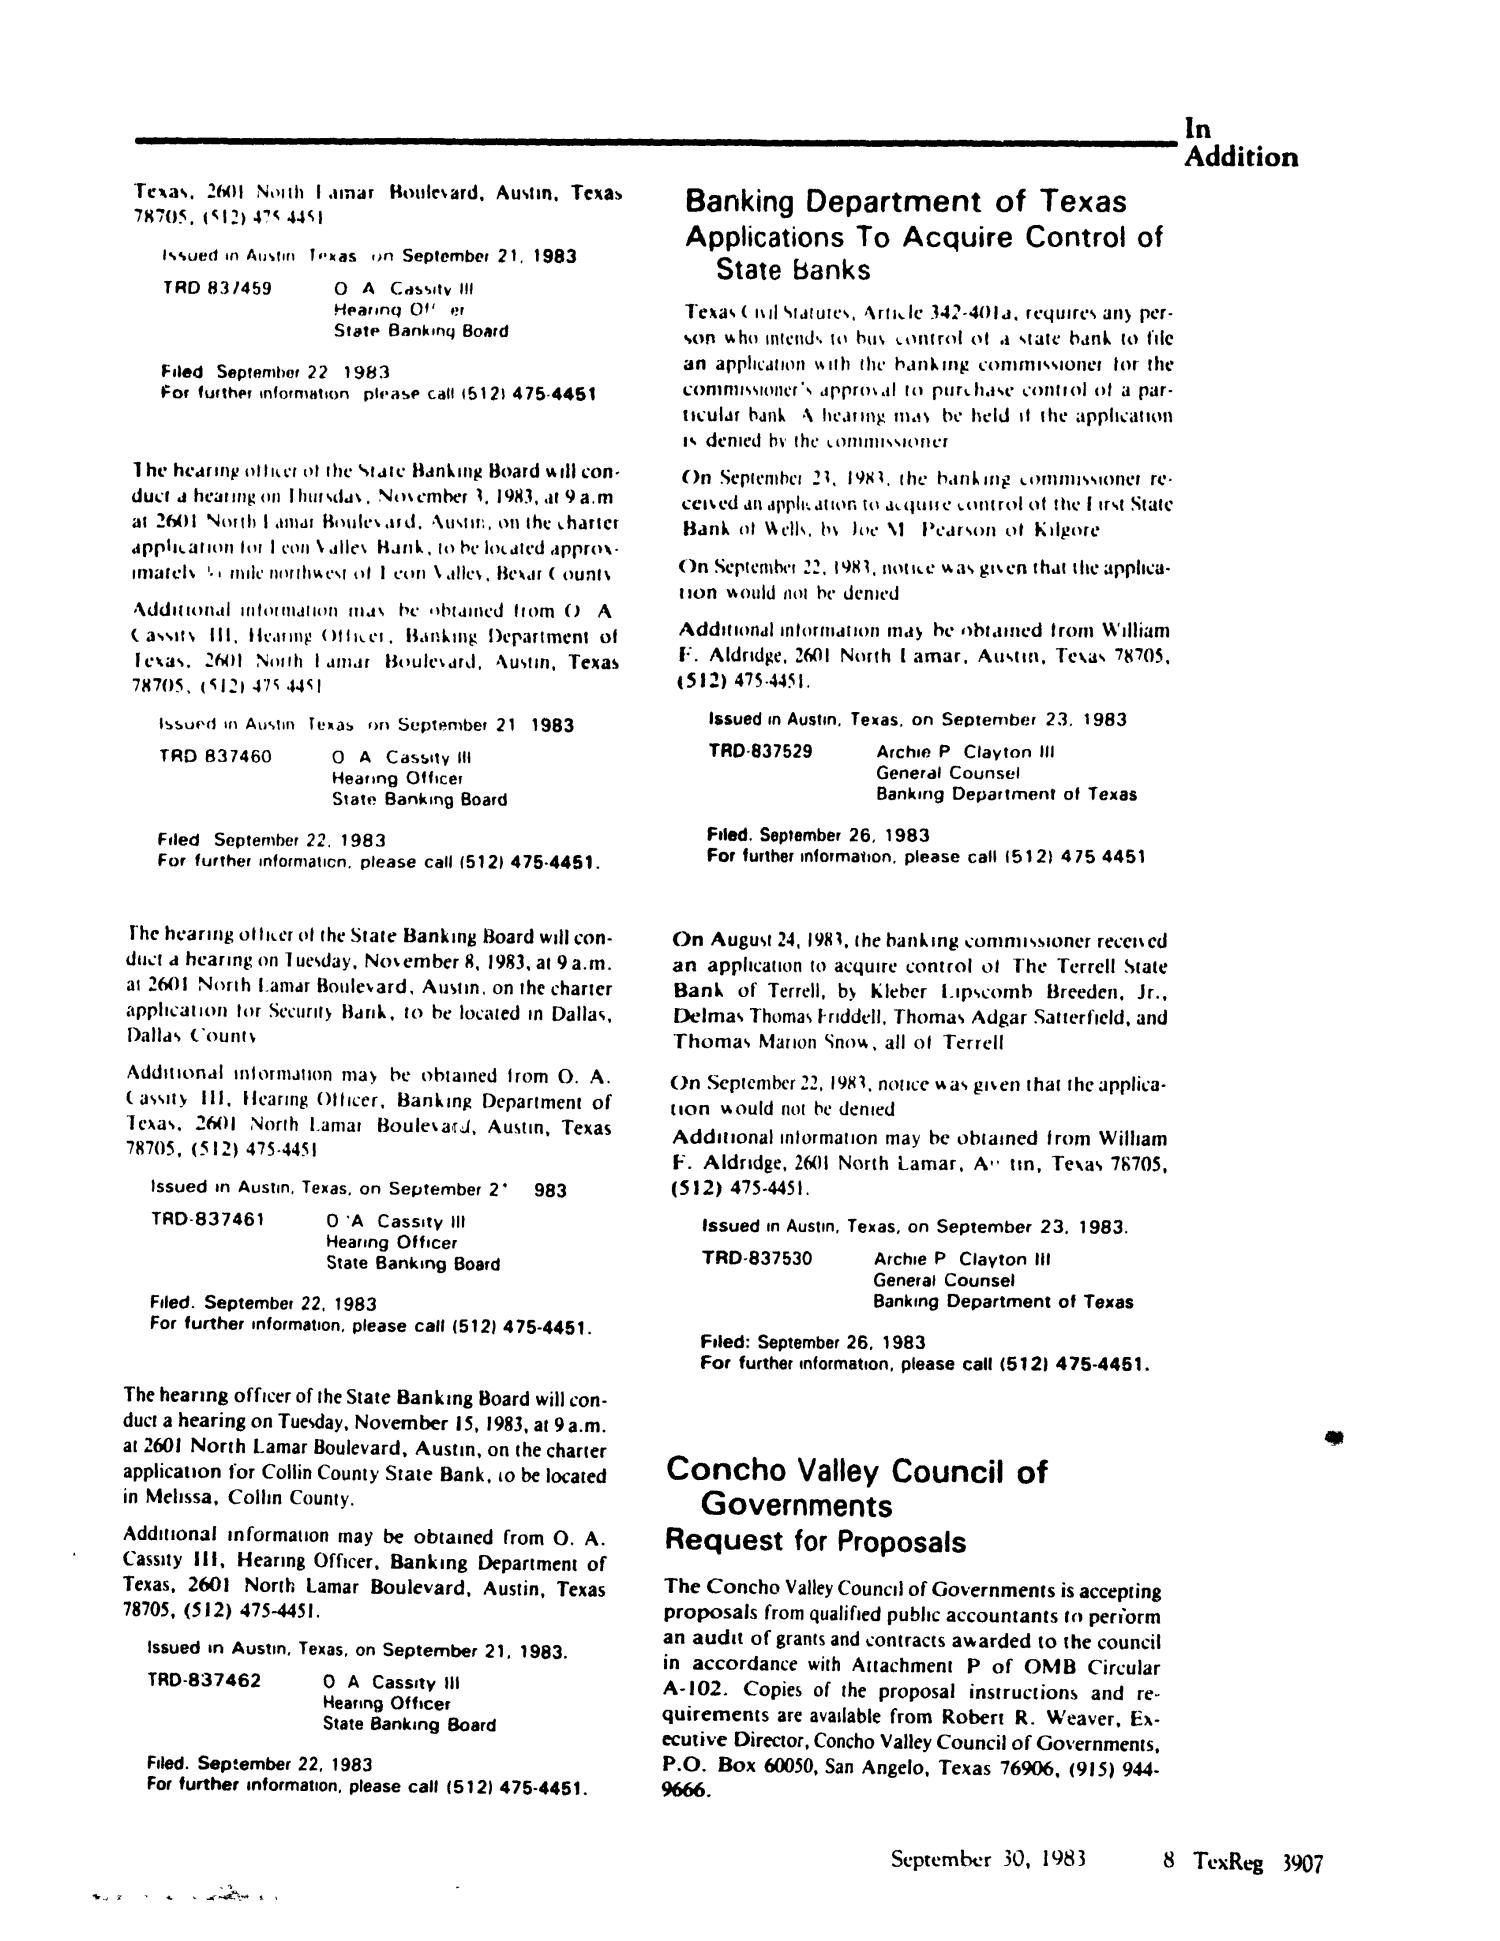 Texas Register, Volume 8, Number 72, Pages 3877-3914, September 30, 1983
                                                
                                                    3907
                                                